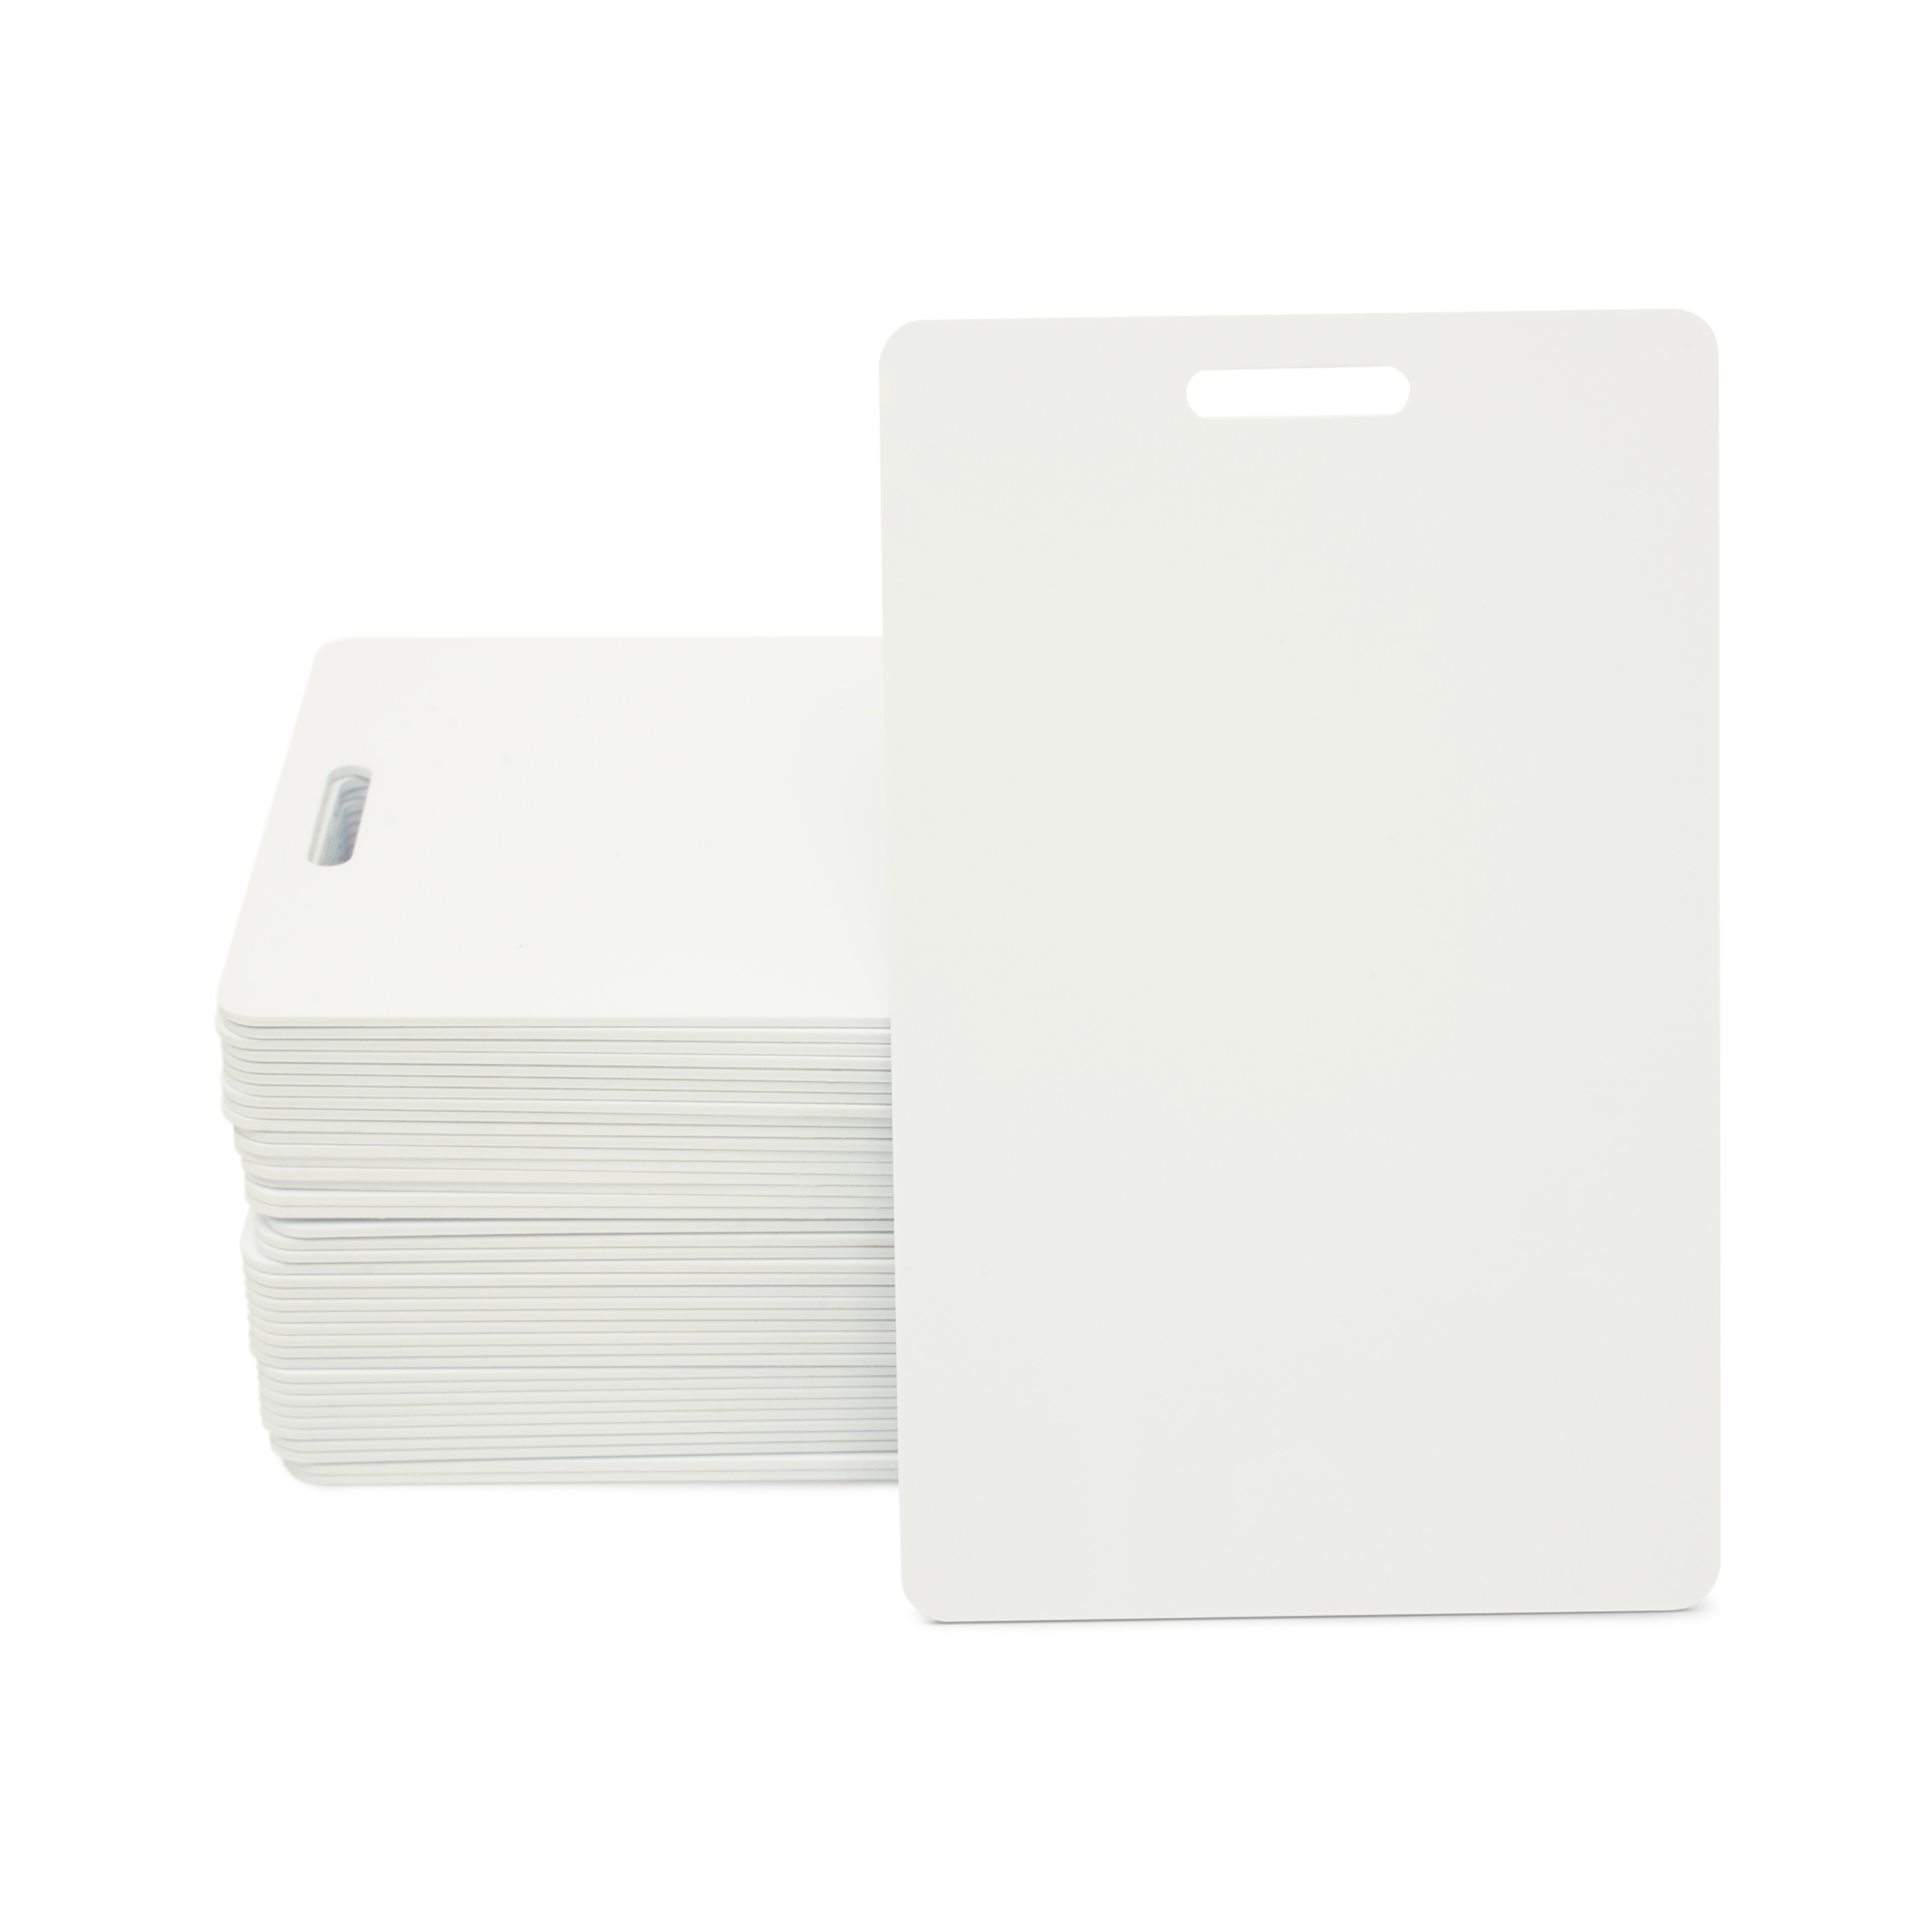 NFC Karte PVC - 85,6 x 54 mm - NTAG213 - 180 Byte - weiß - Hochformat mit Schlitz